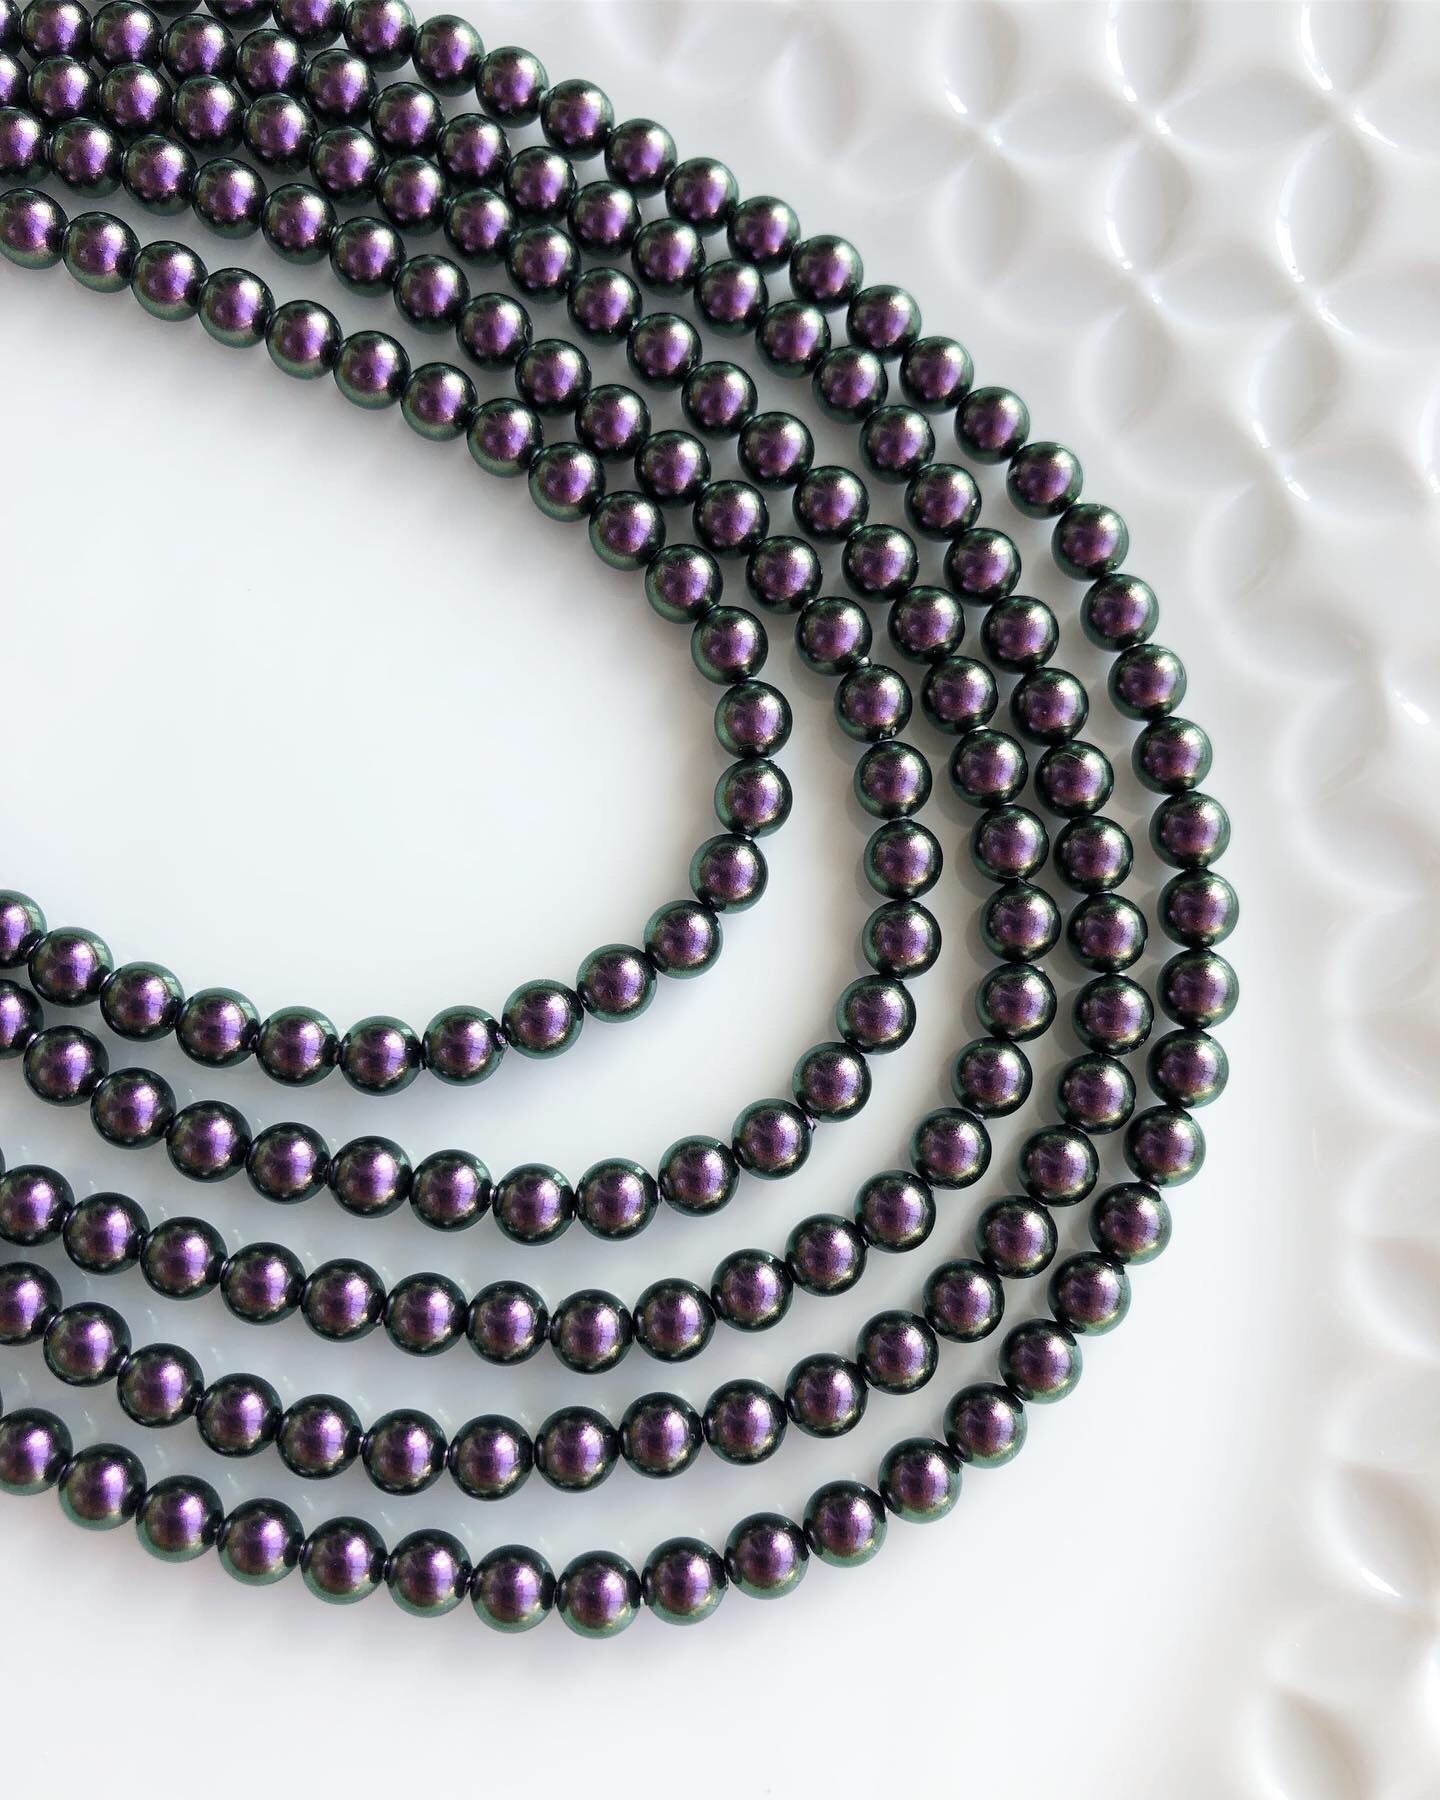 Жемчуг Swarovski Iridescent Purple Pearl 5 мм